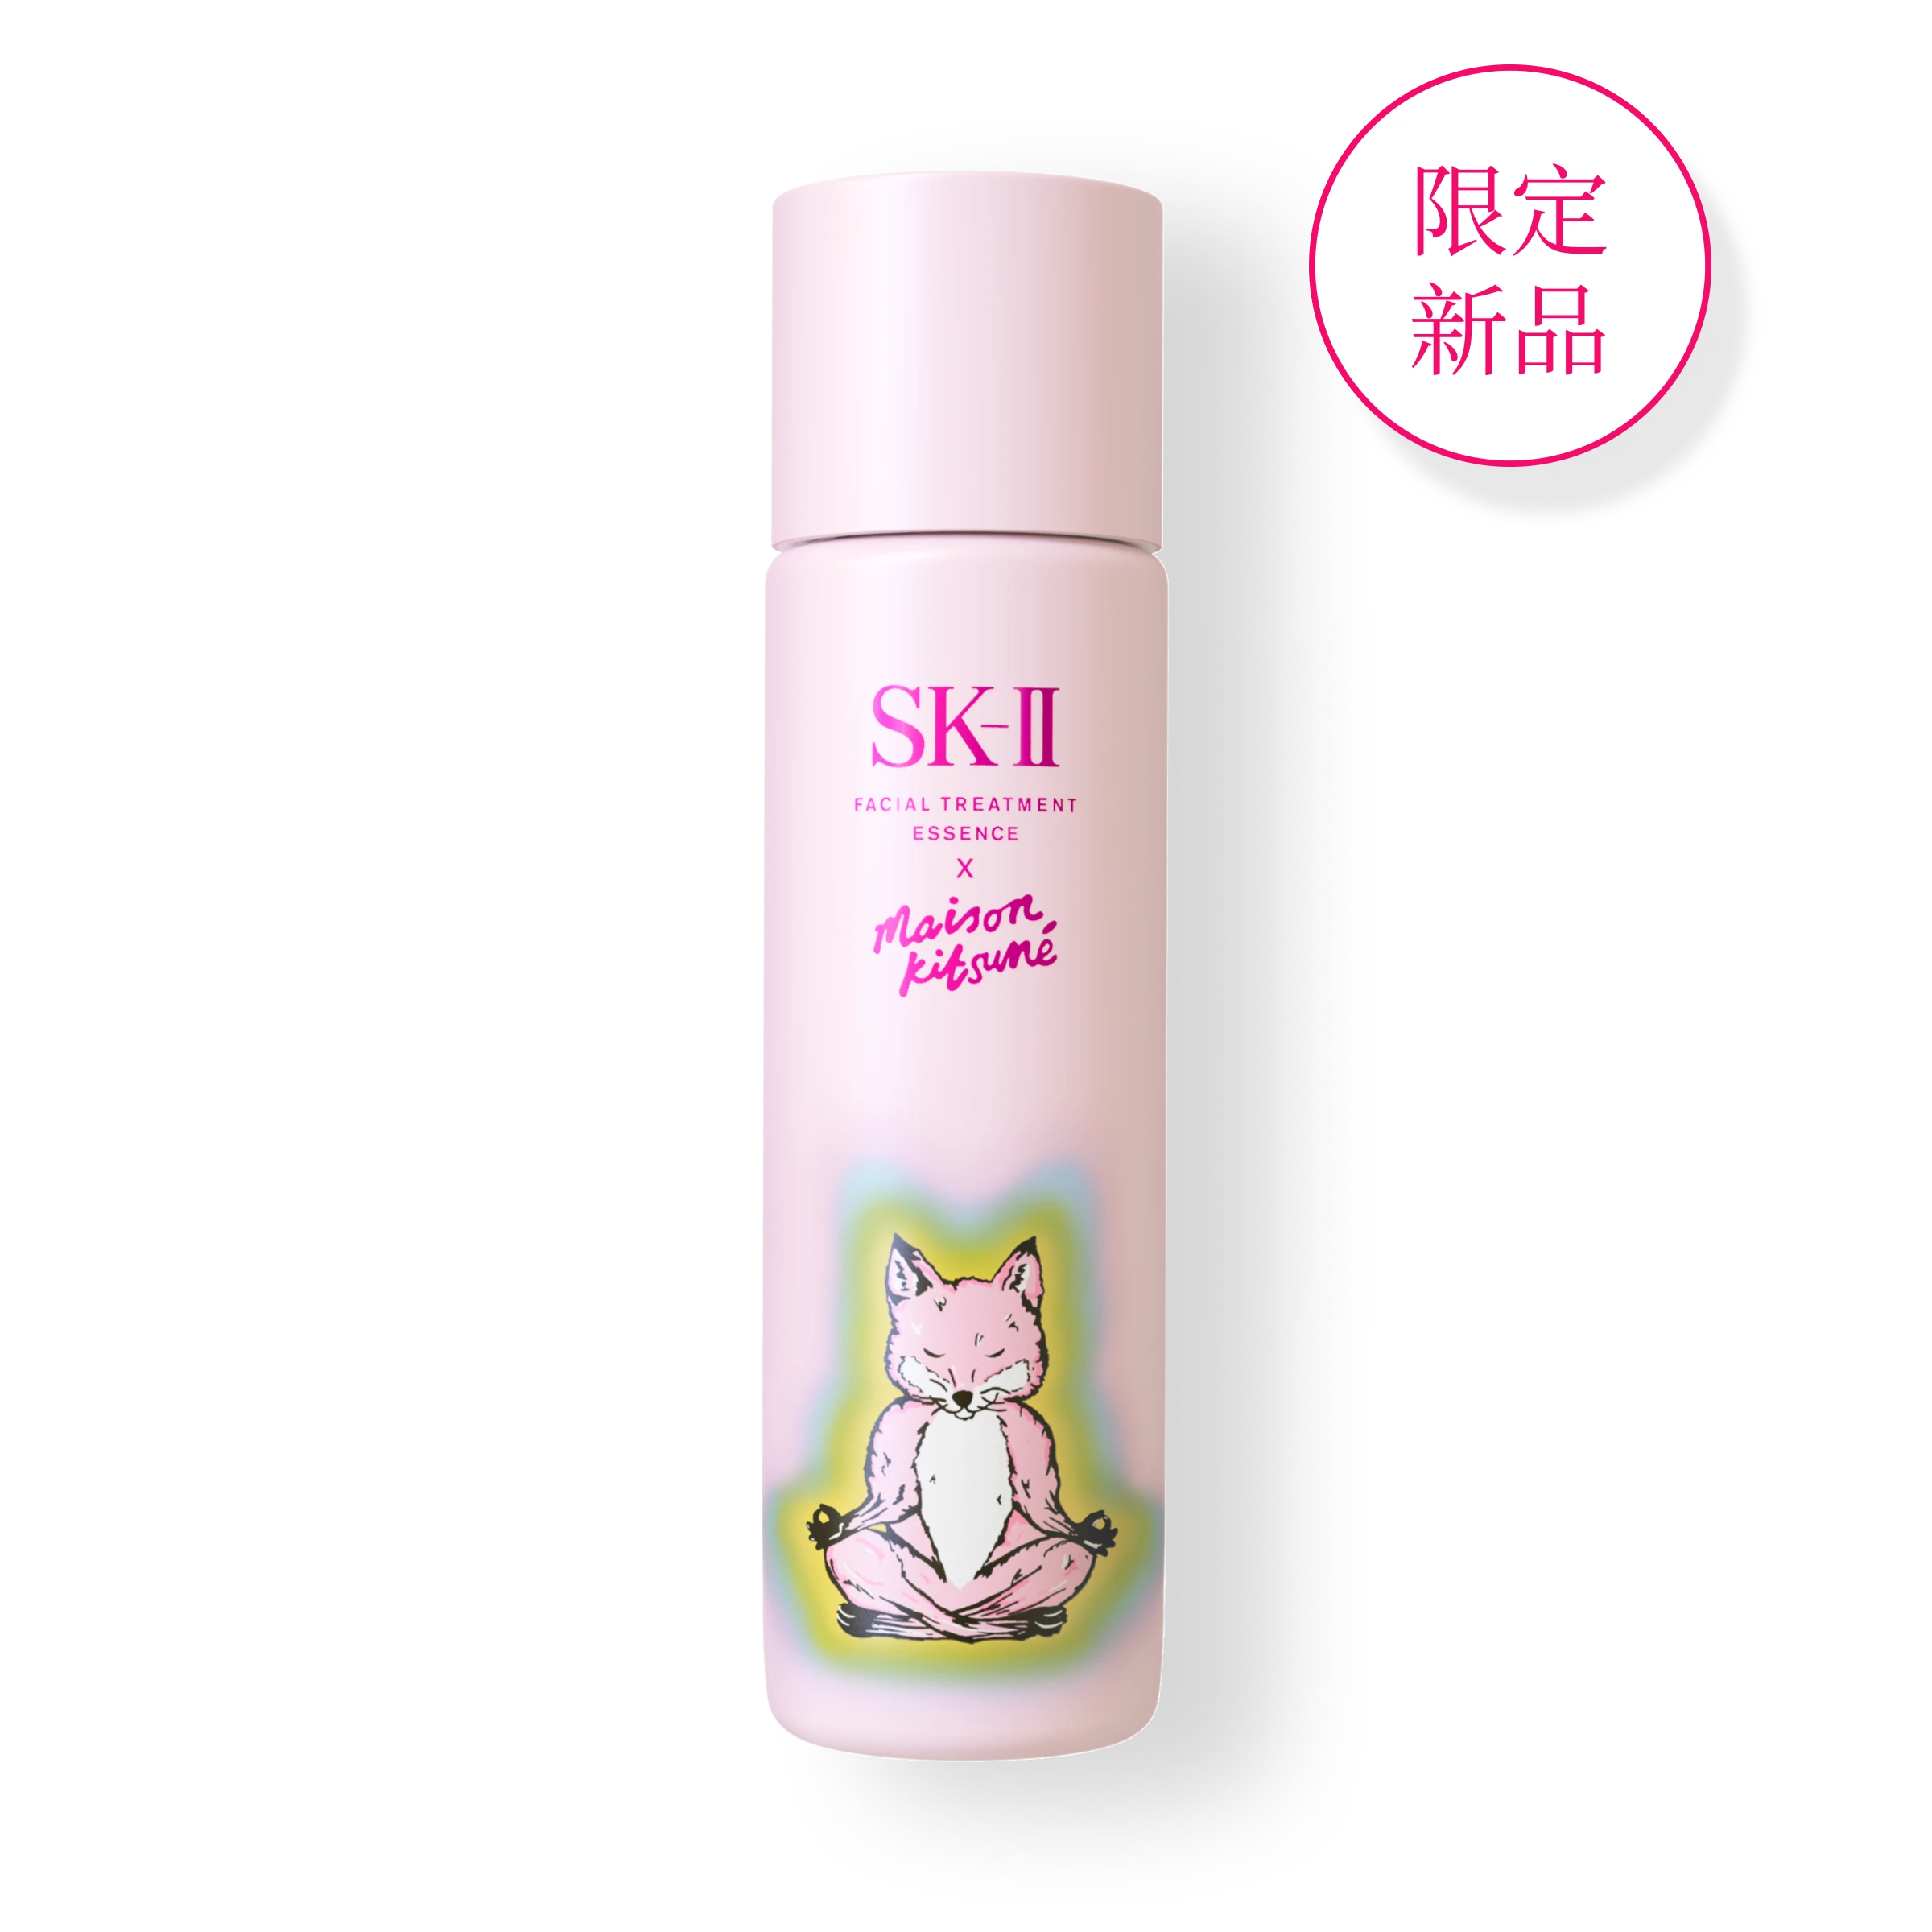 保濕乳液： 爲肌膚緊鎖水份，改善皮膚乾燥粗糙的問題| SK-II 台灣